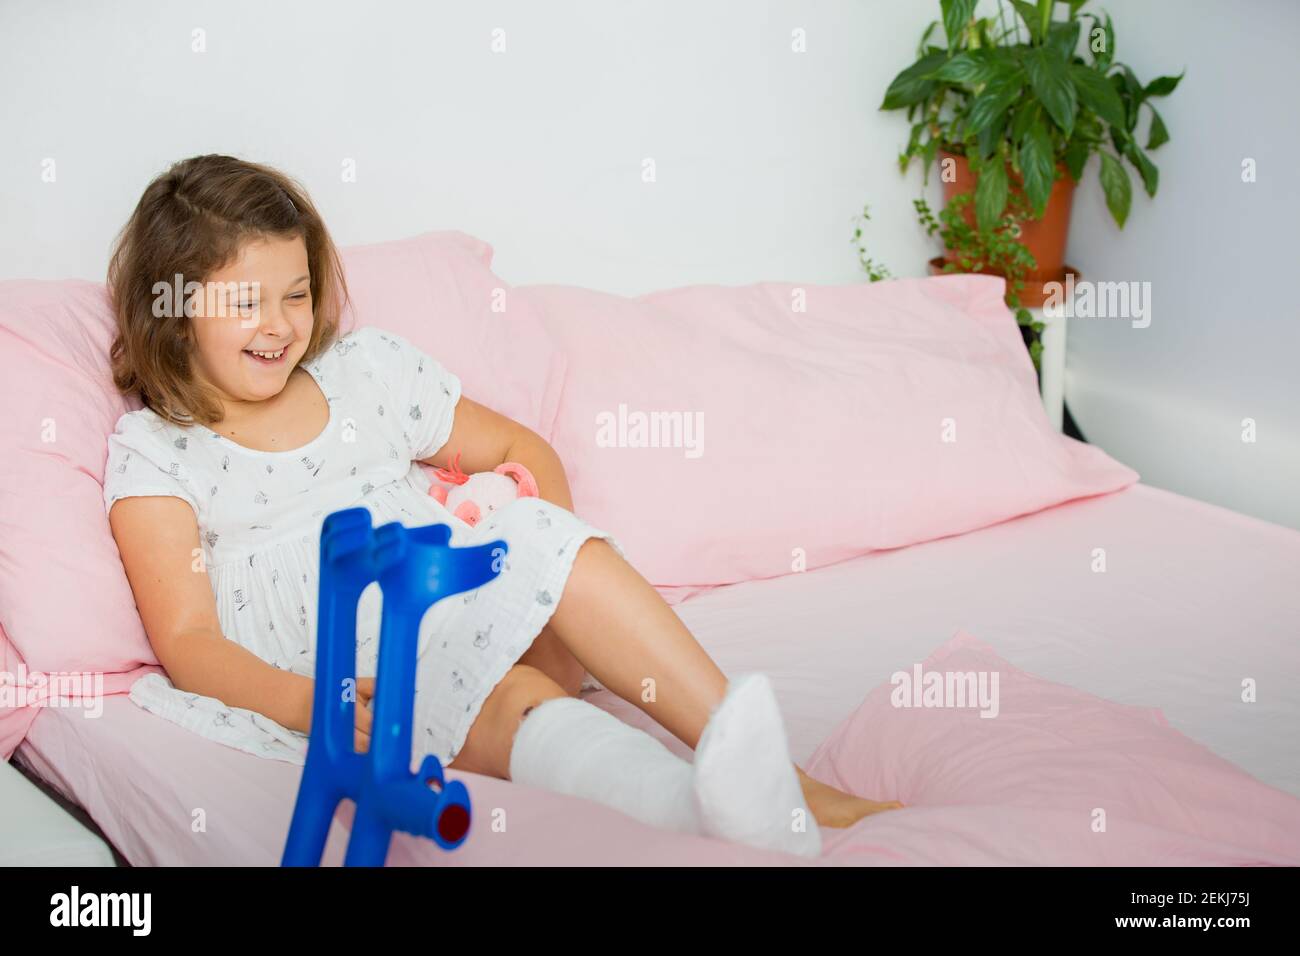 Une adolescente joyeuse se trouve sur le lit après avoir fait jeter sa jambe dans la salle d'urgence. L'enfant a une jambe cassée, un os cassé Banque D'Images